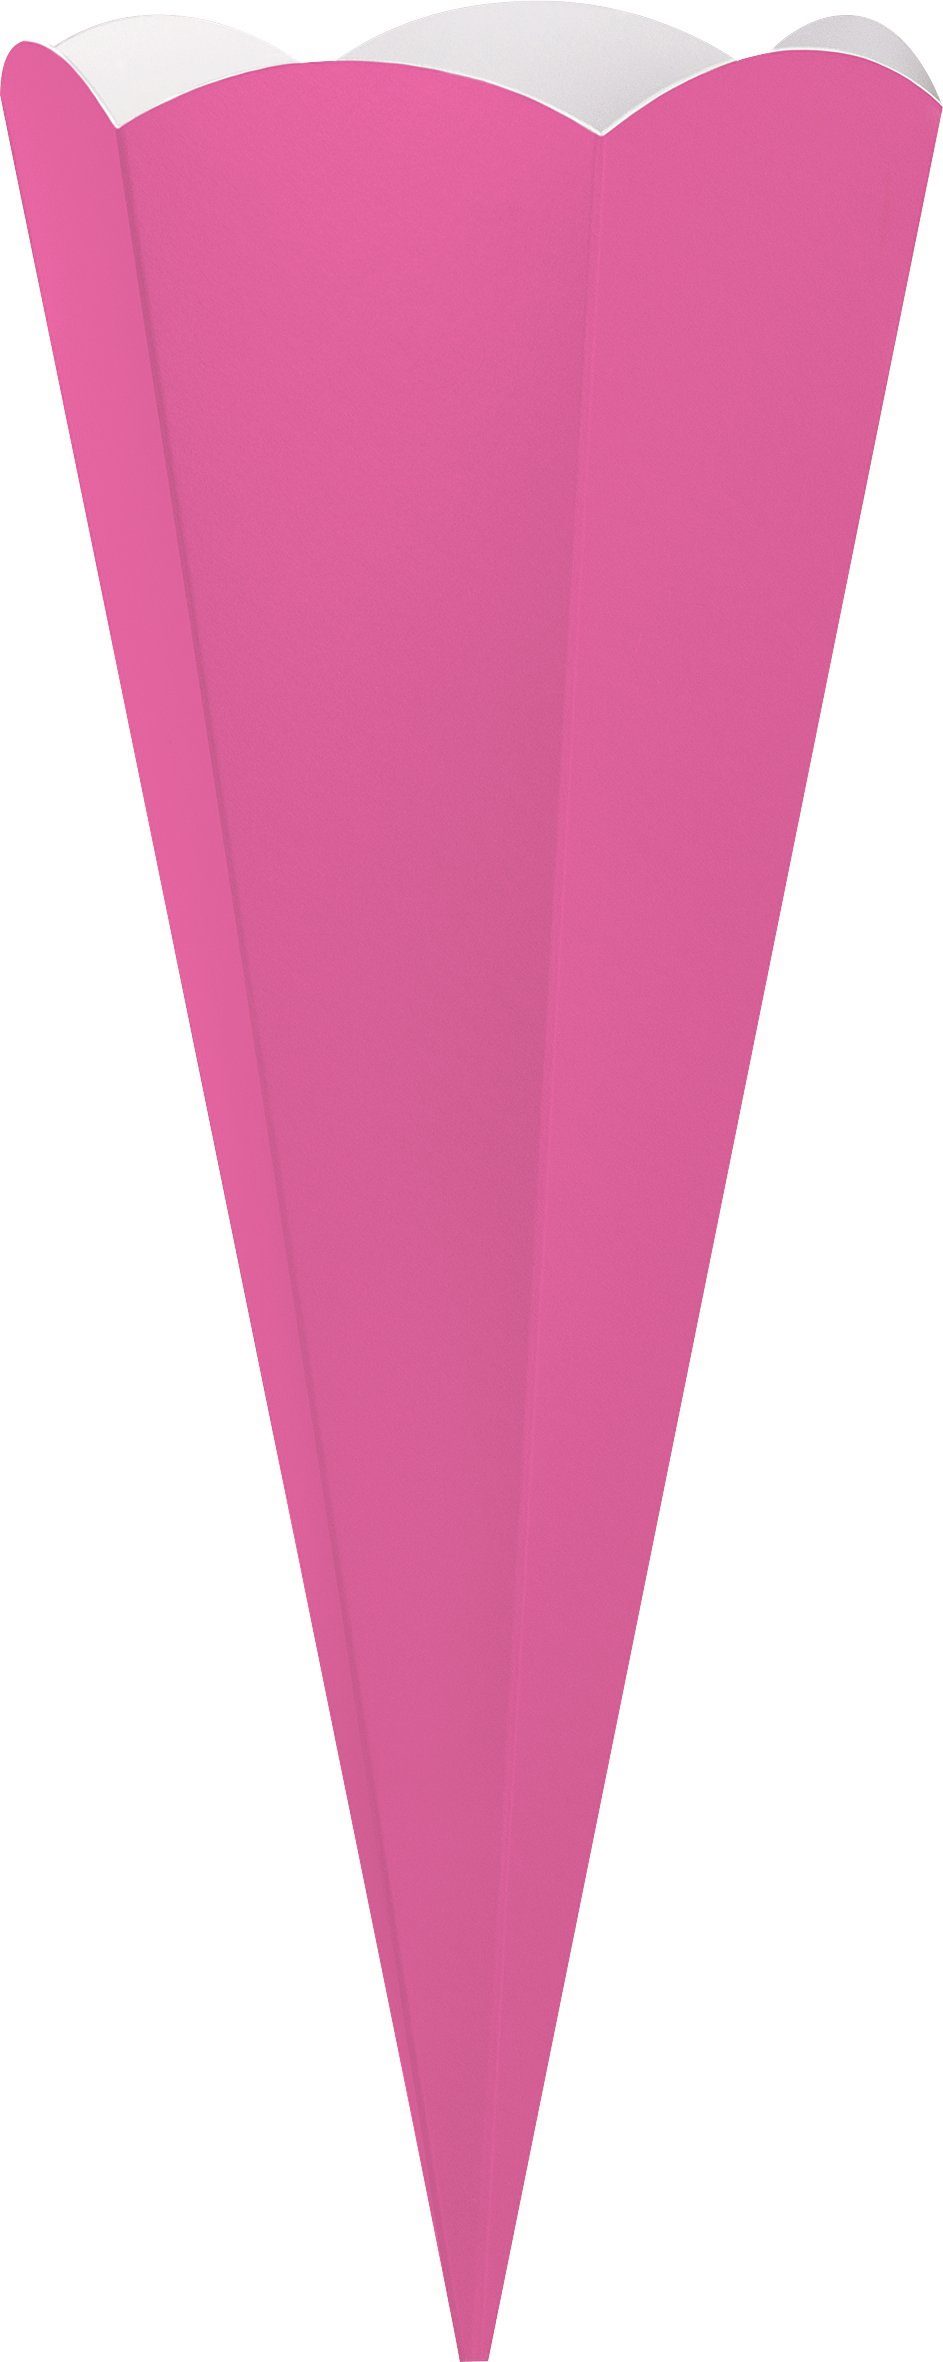 Schultüte Pink Heyda Schultüten-Zuschnitt, cm 69